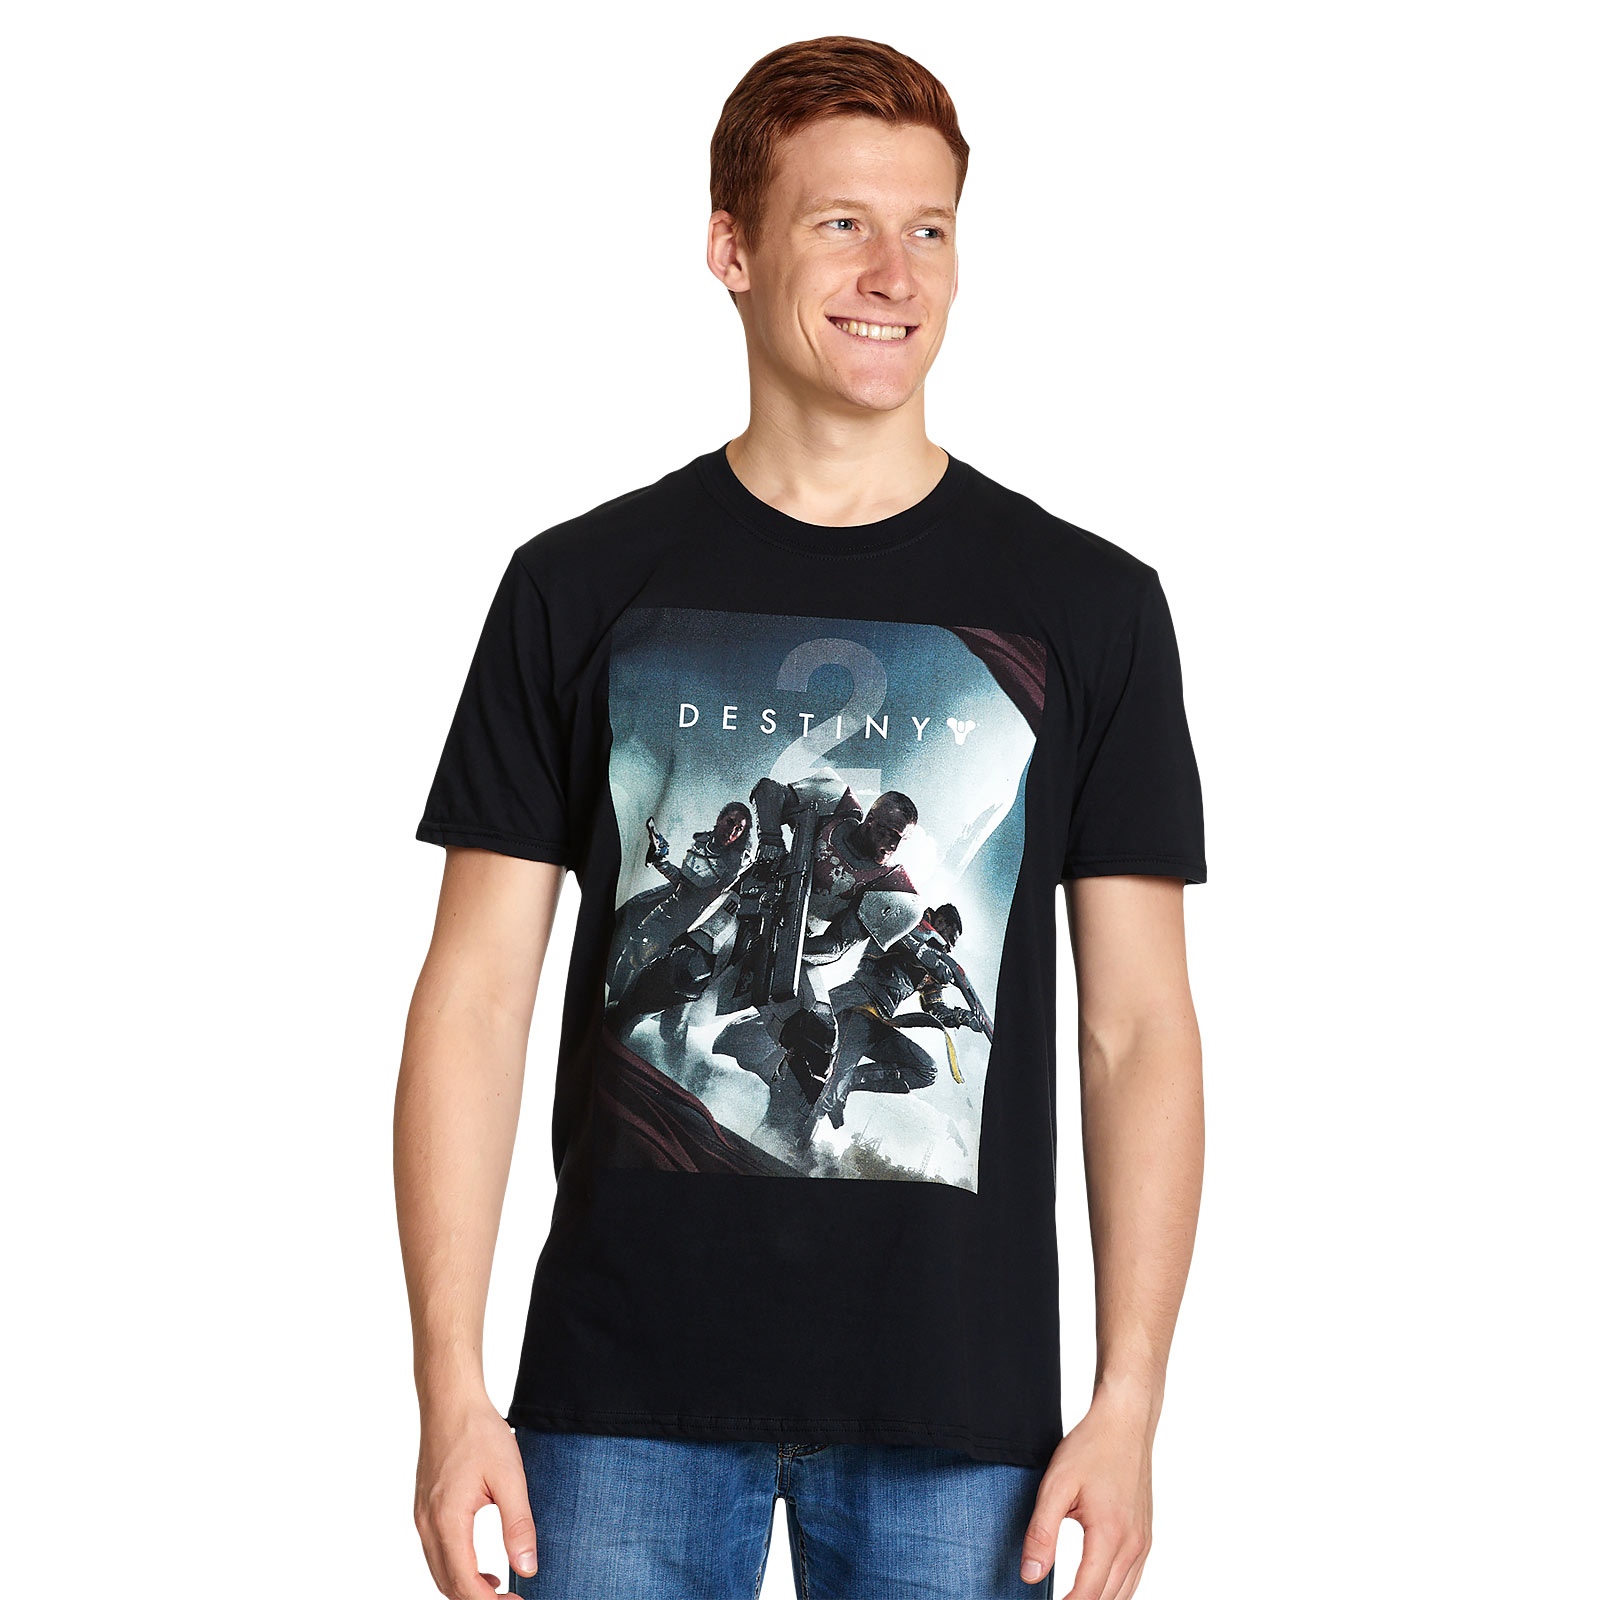 Destiny - Shooter T-Shirt Zwart